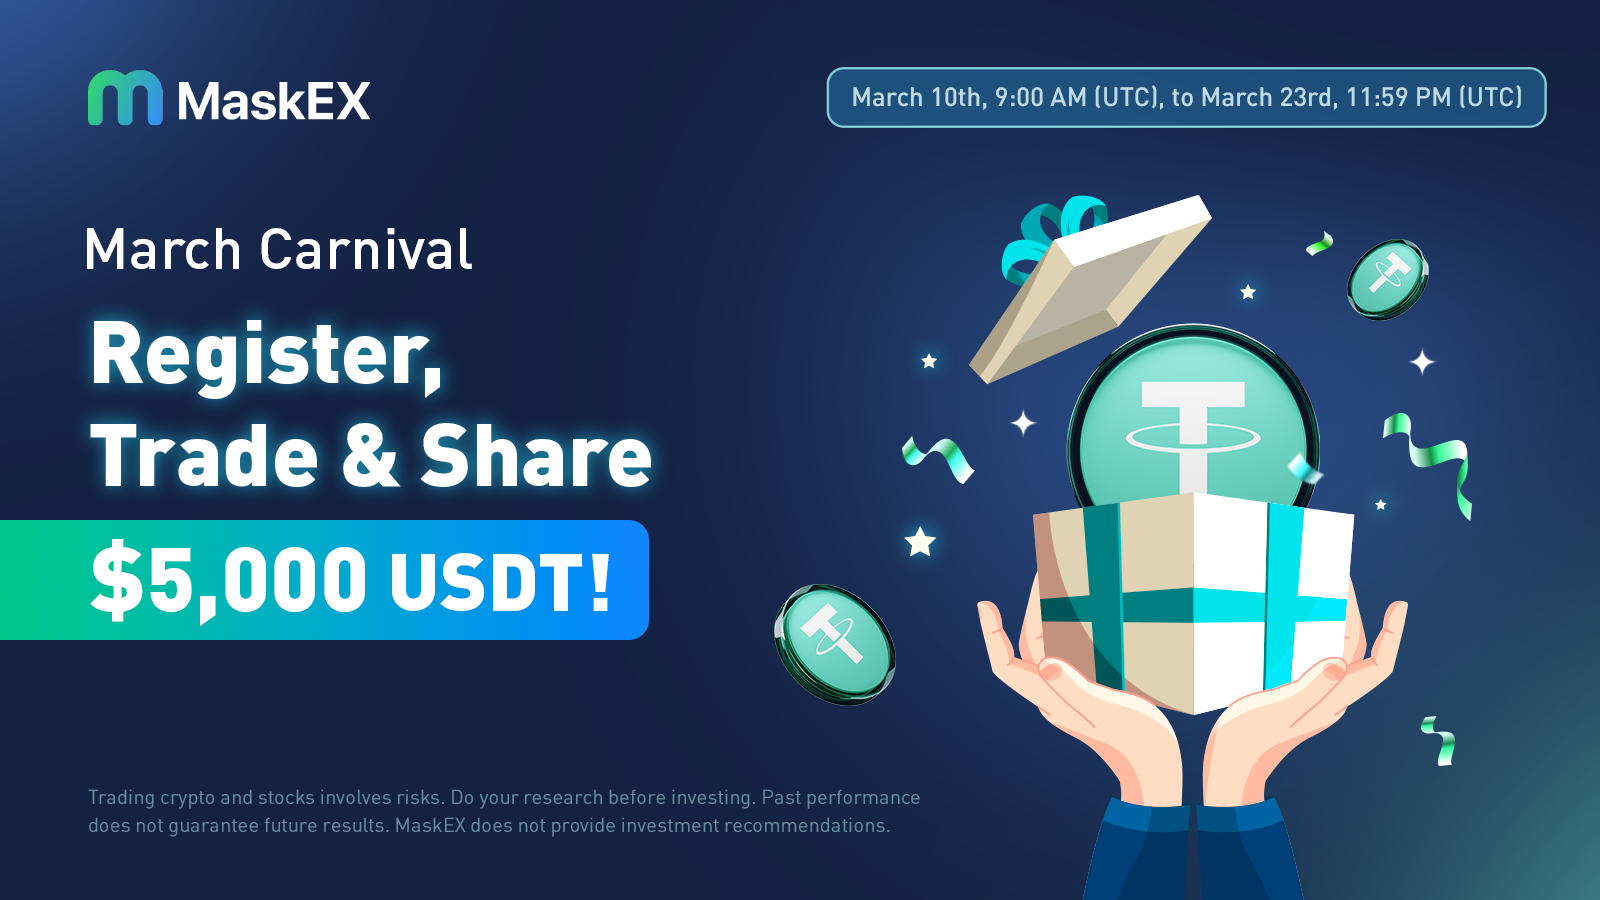 MaskEX March Carnival: Register, Trade, & Share $5,000 USDT!